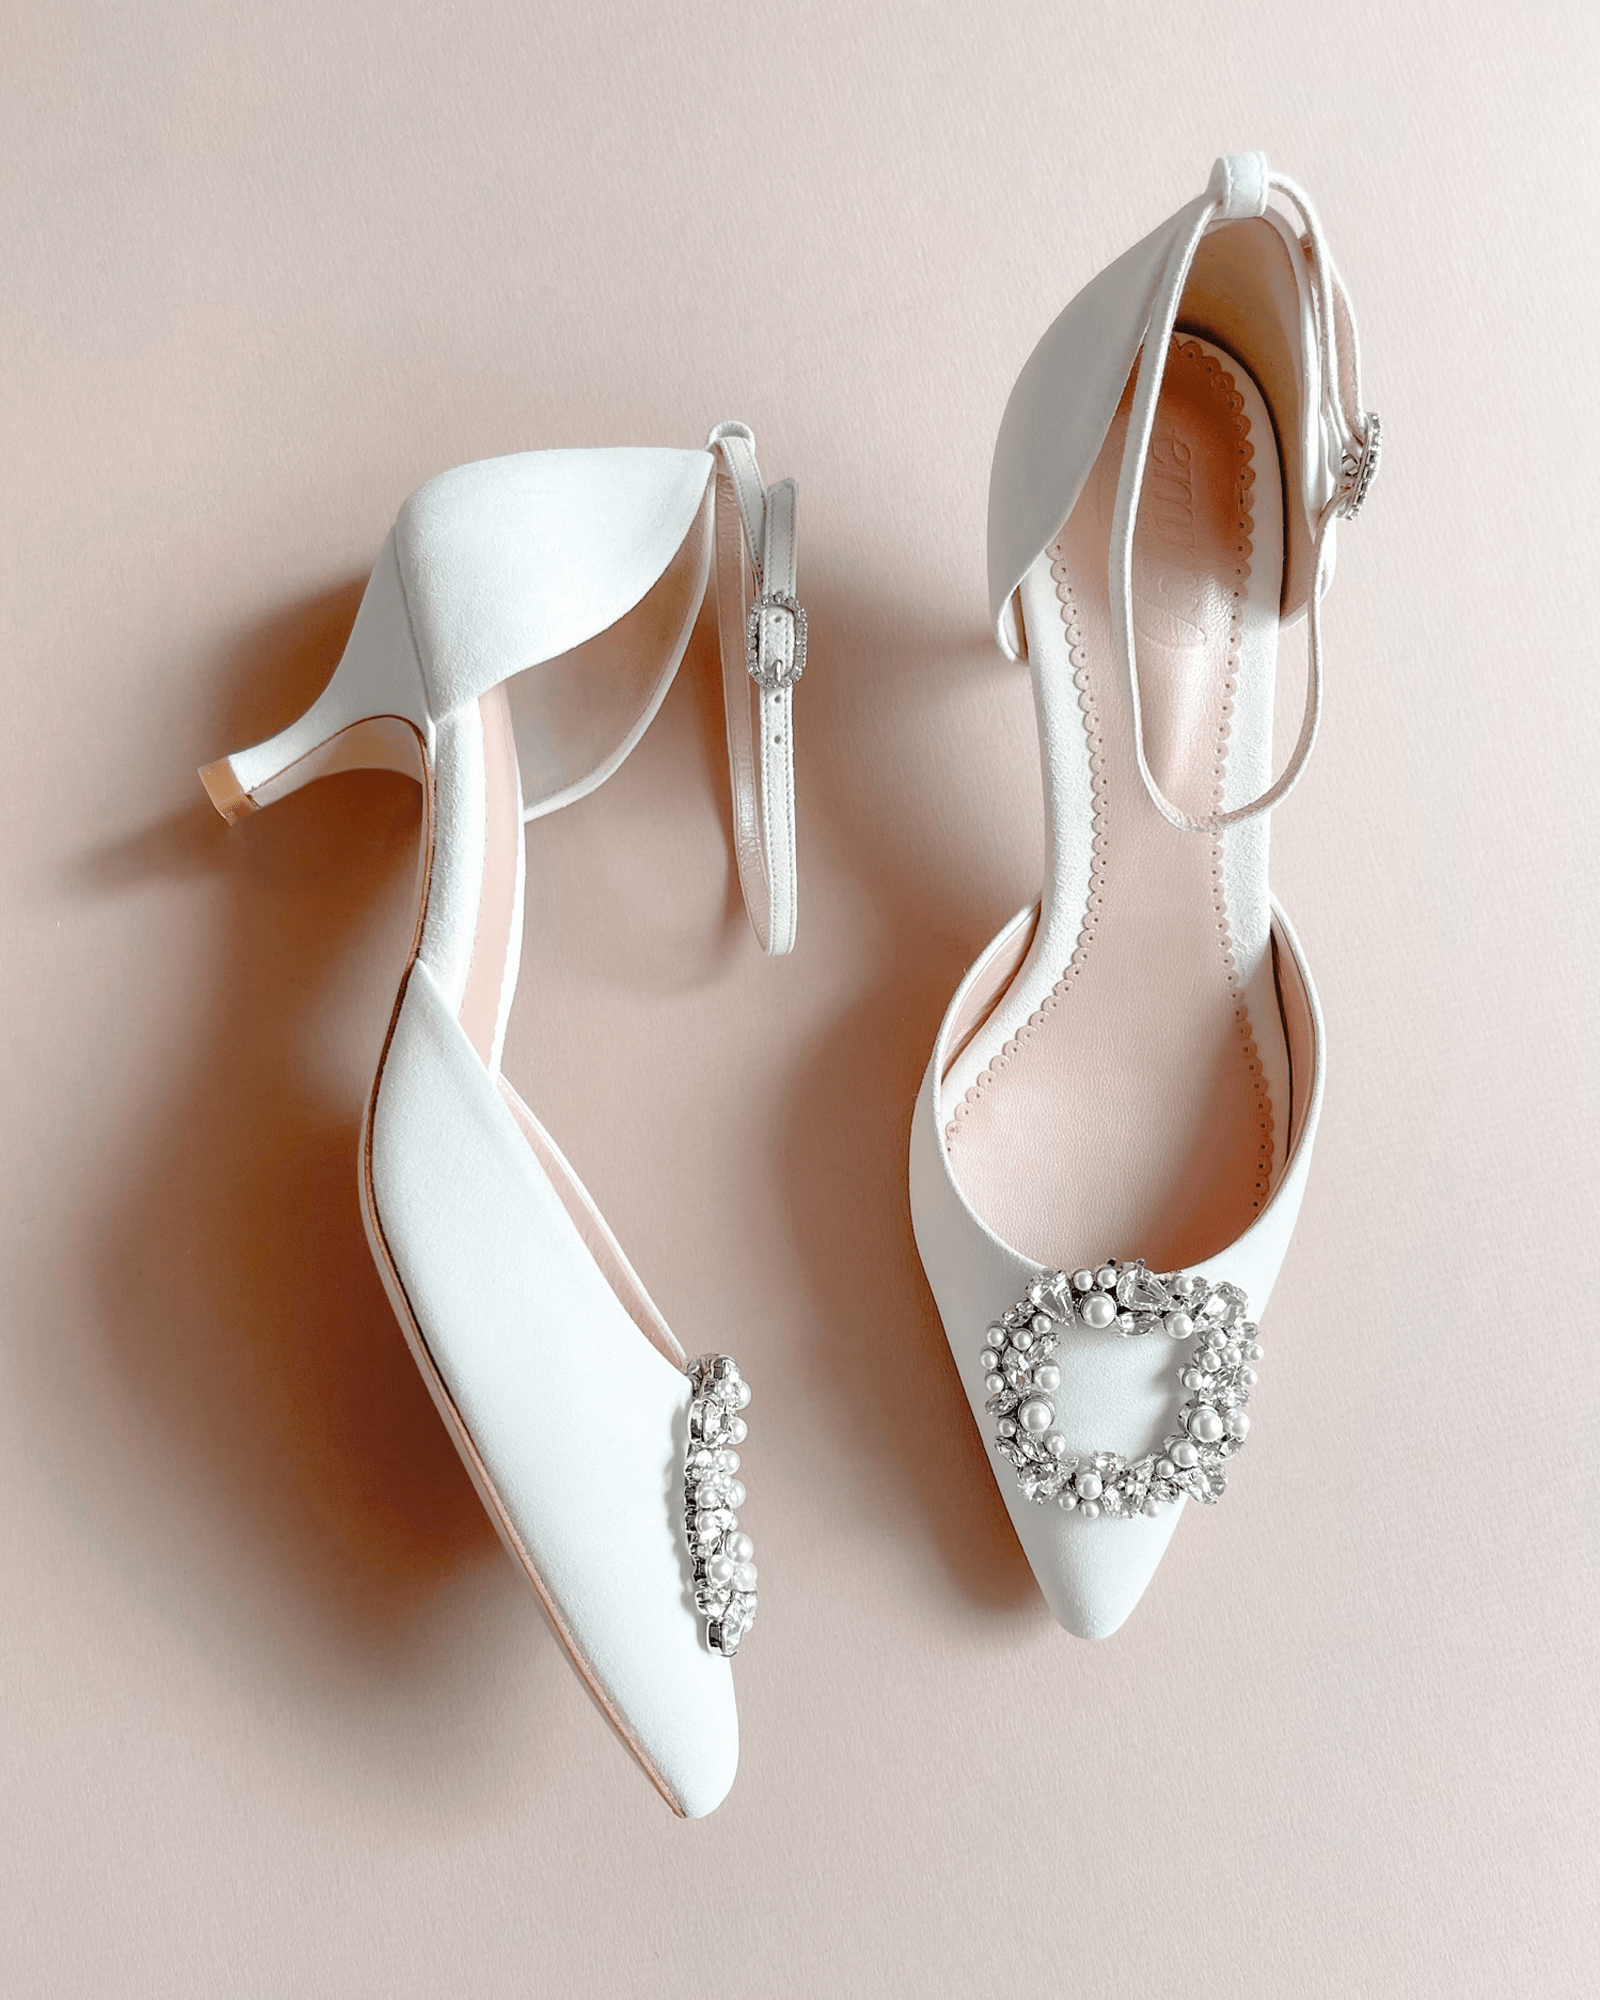 Harriet Low Heel Bridal Shoe Ivory Kitten Heeled Court Shoe  image